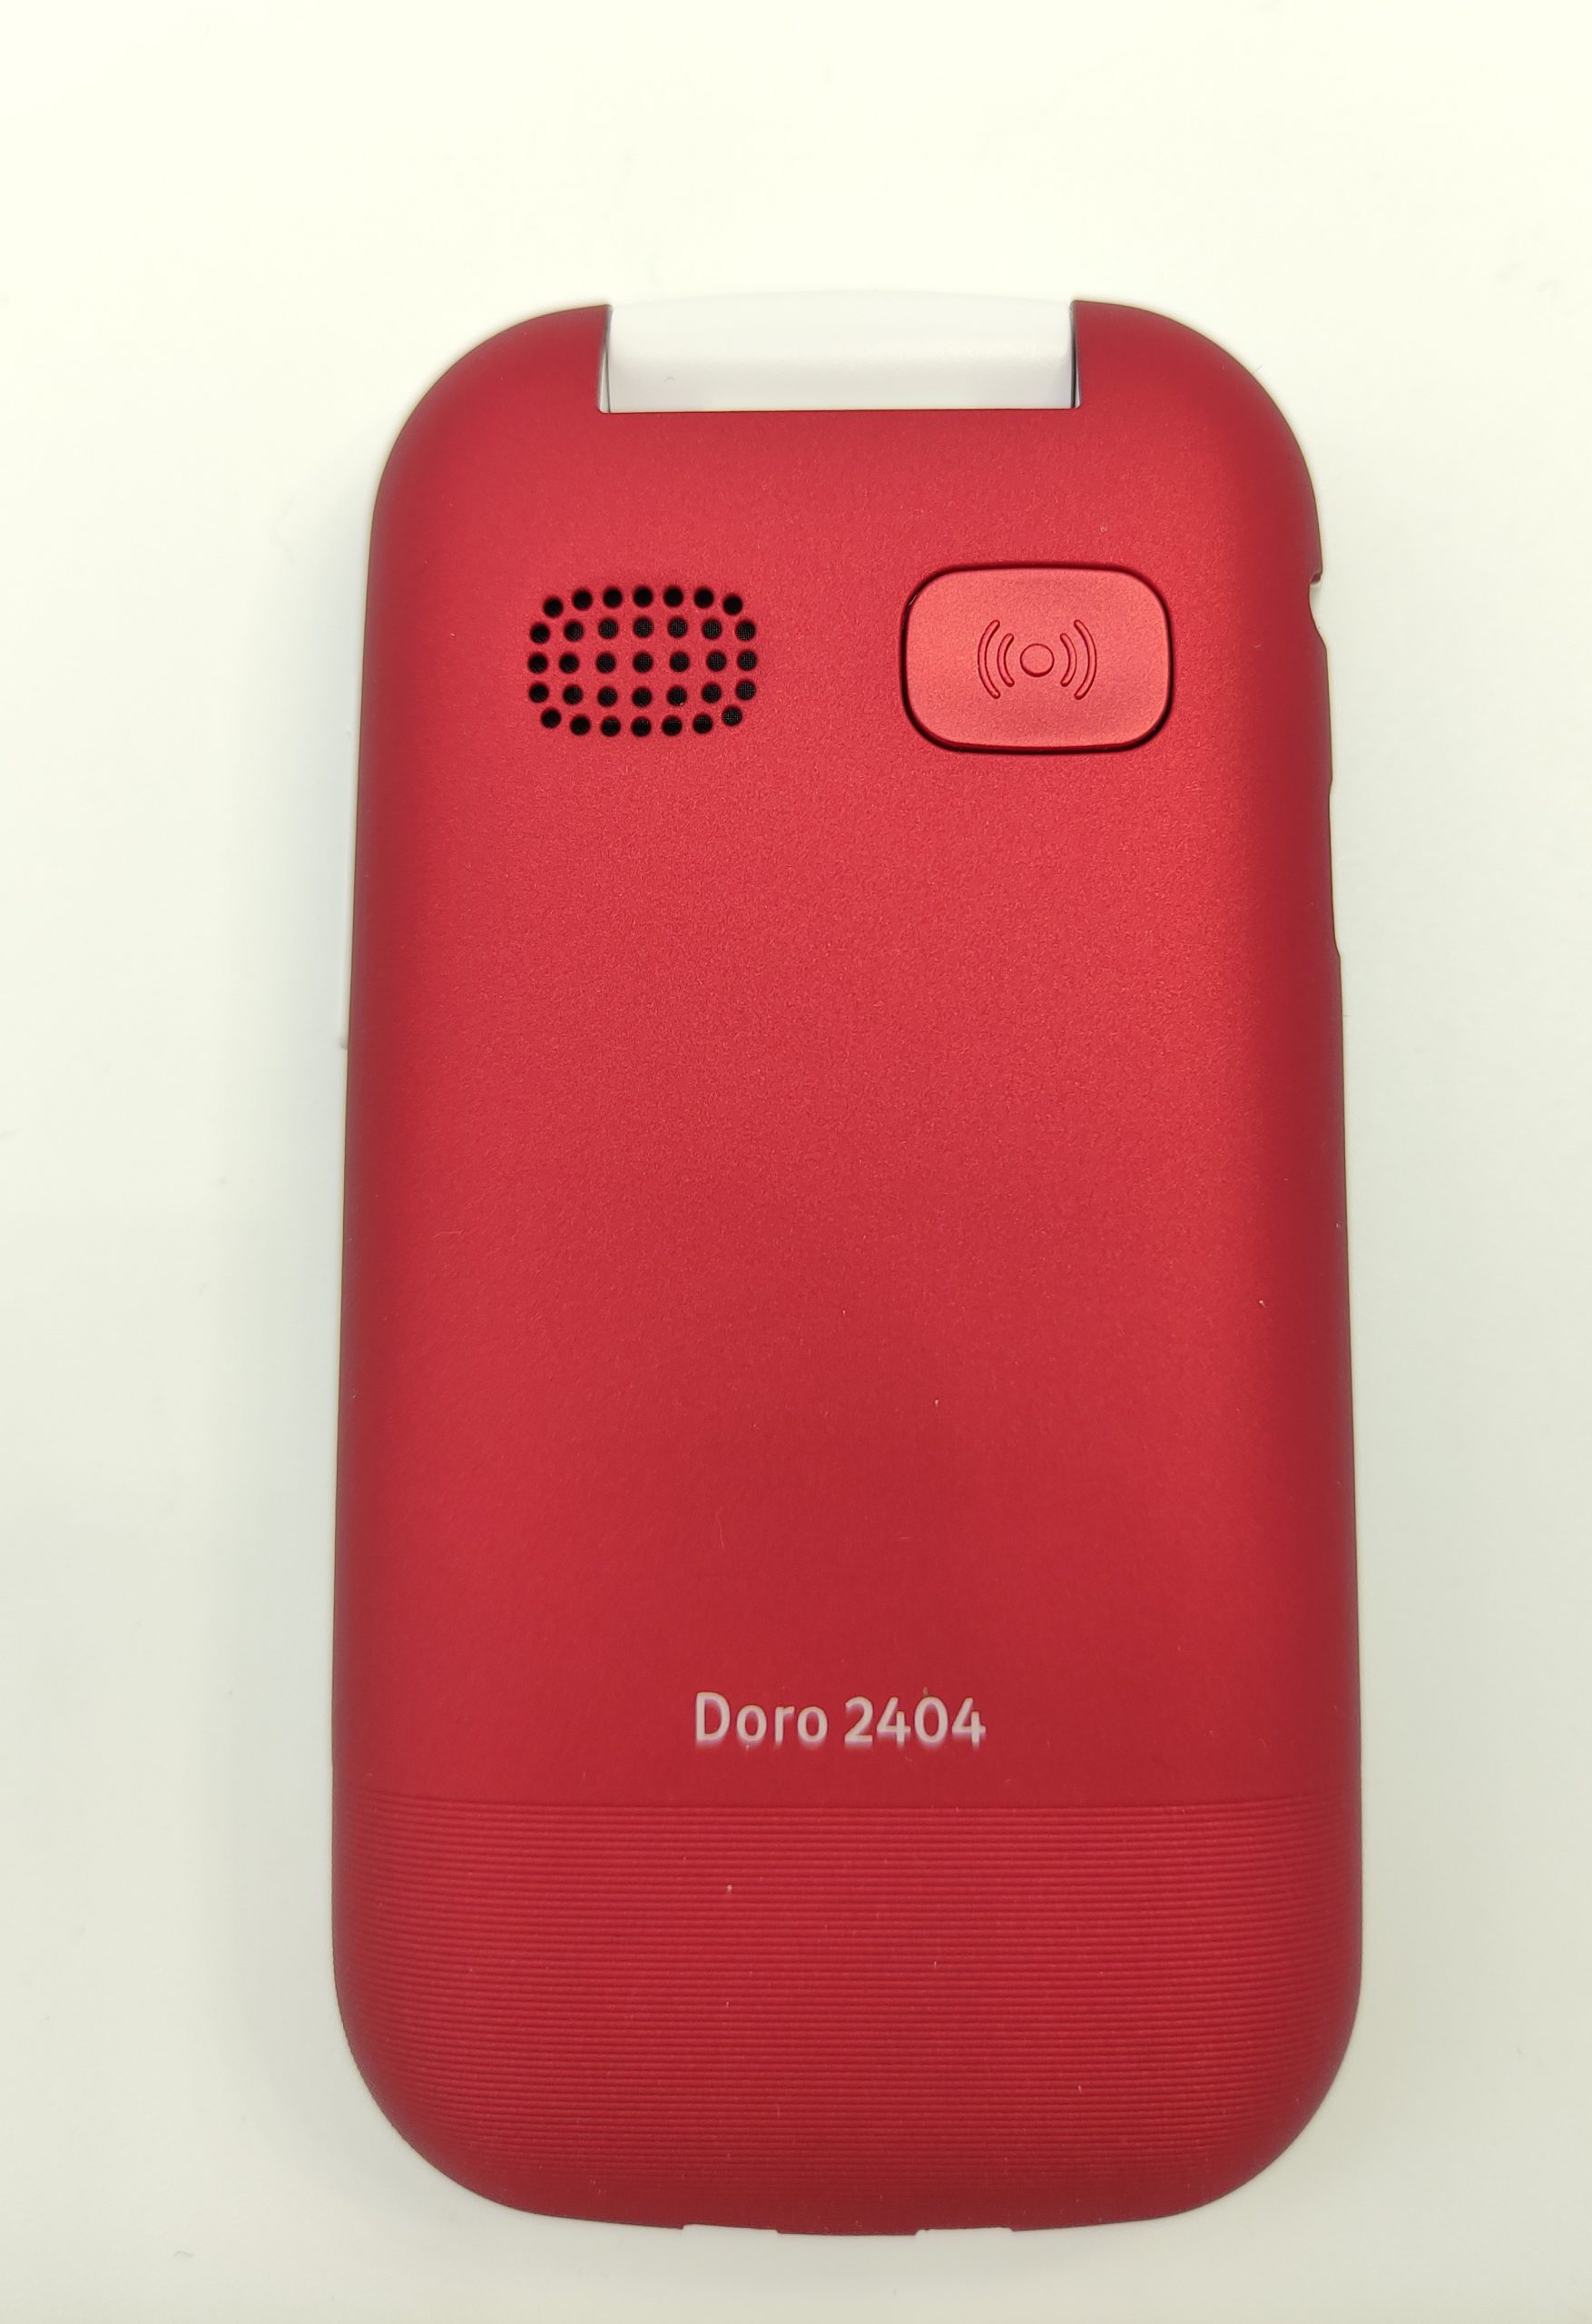 Doro 2404 Rouge - téléphone senior à clapet - Auriseo